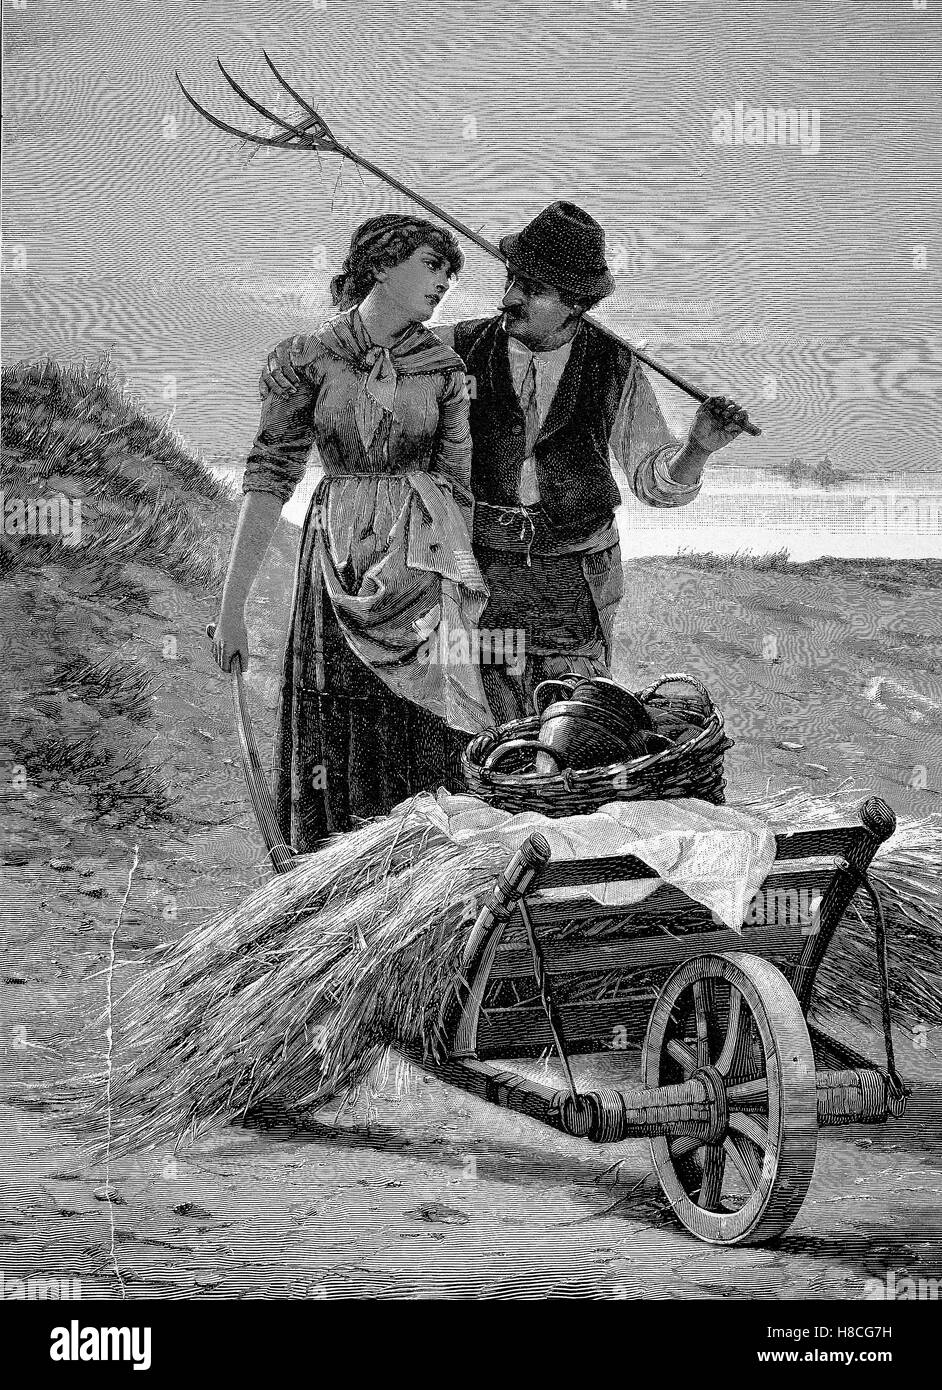 Giovane contadina sul loro modo home dalla vendemmia, Xilografia dal 1892 Foto Stock